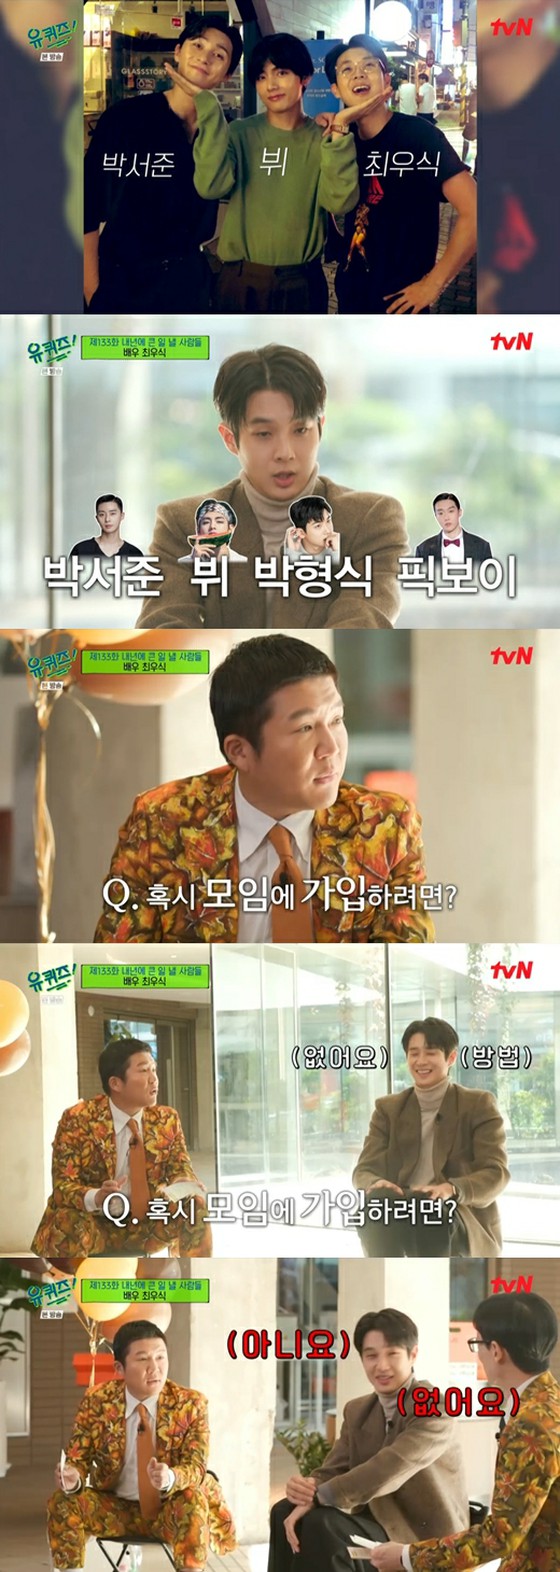 Nam diễn viên Choi Woo-shik "Park Seo Jun, làm thế nào để tham gia một buổi tụ tập với V? Không"